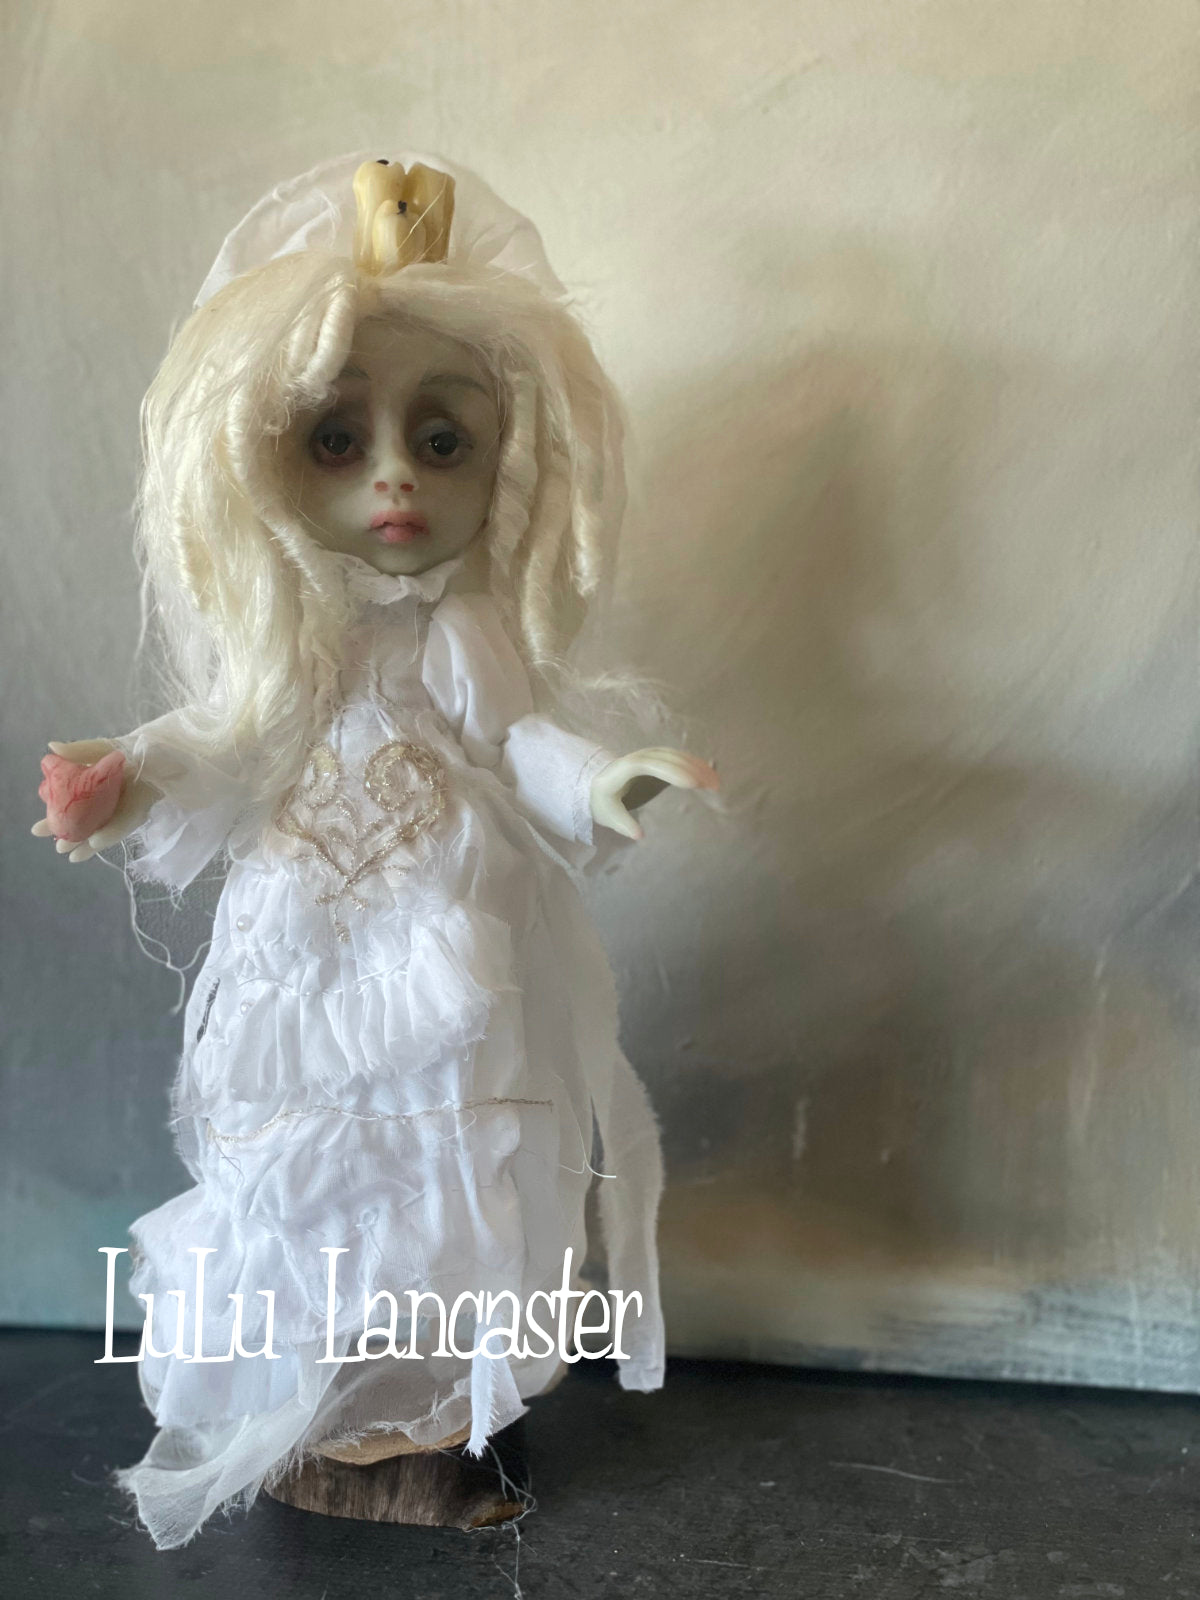 Trynn Scorned Heart Glowing Ghost Original LuLu Lancaster Art Doll